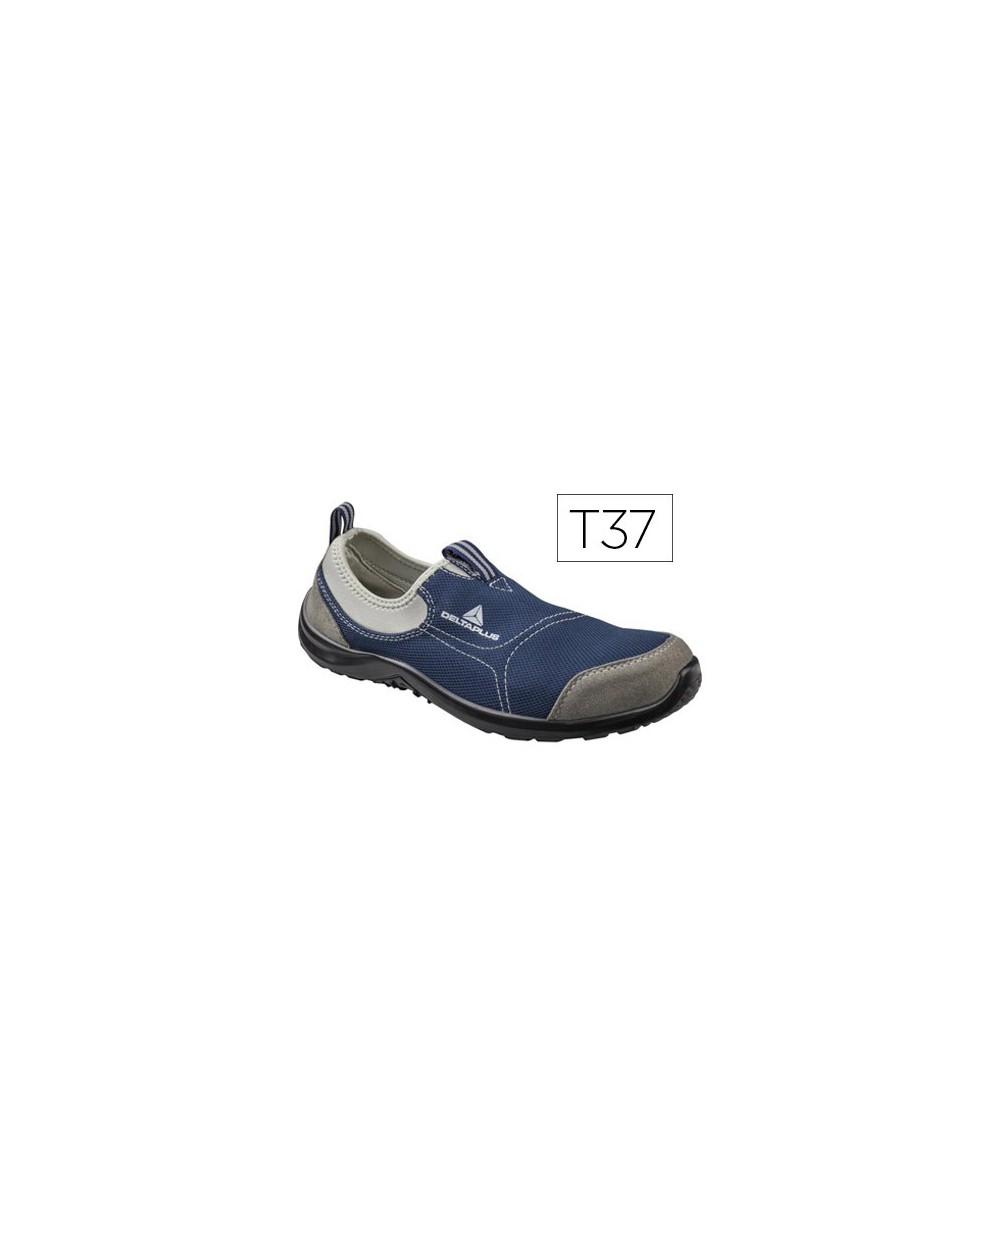 Zapatos de seguridad deltaplus de poliester y algodon con plantilla y puntera color a zul marino talla 37